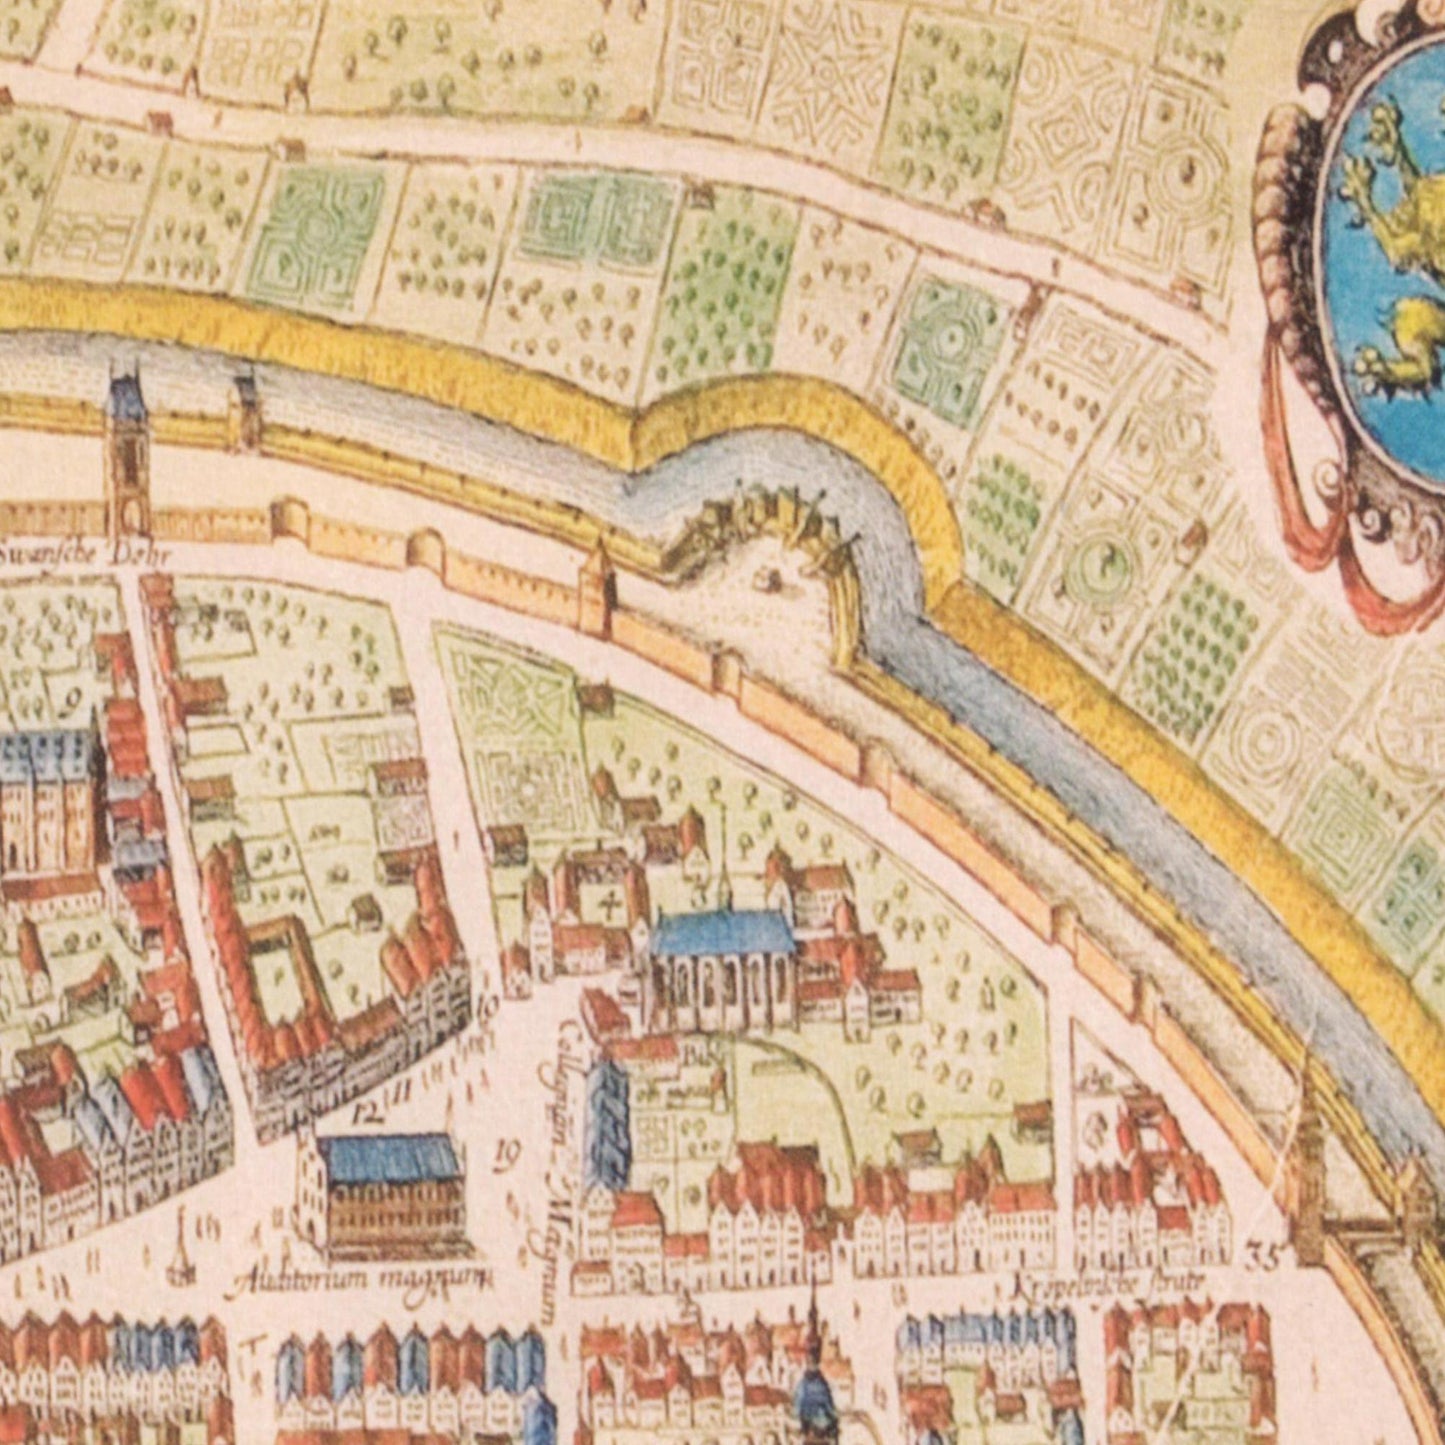 Historischer Stadtplan Rostock um 1625